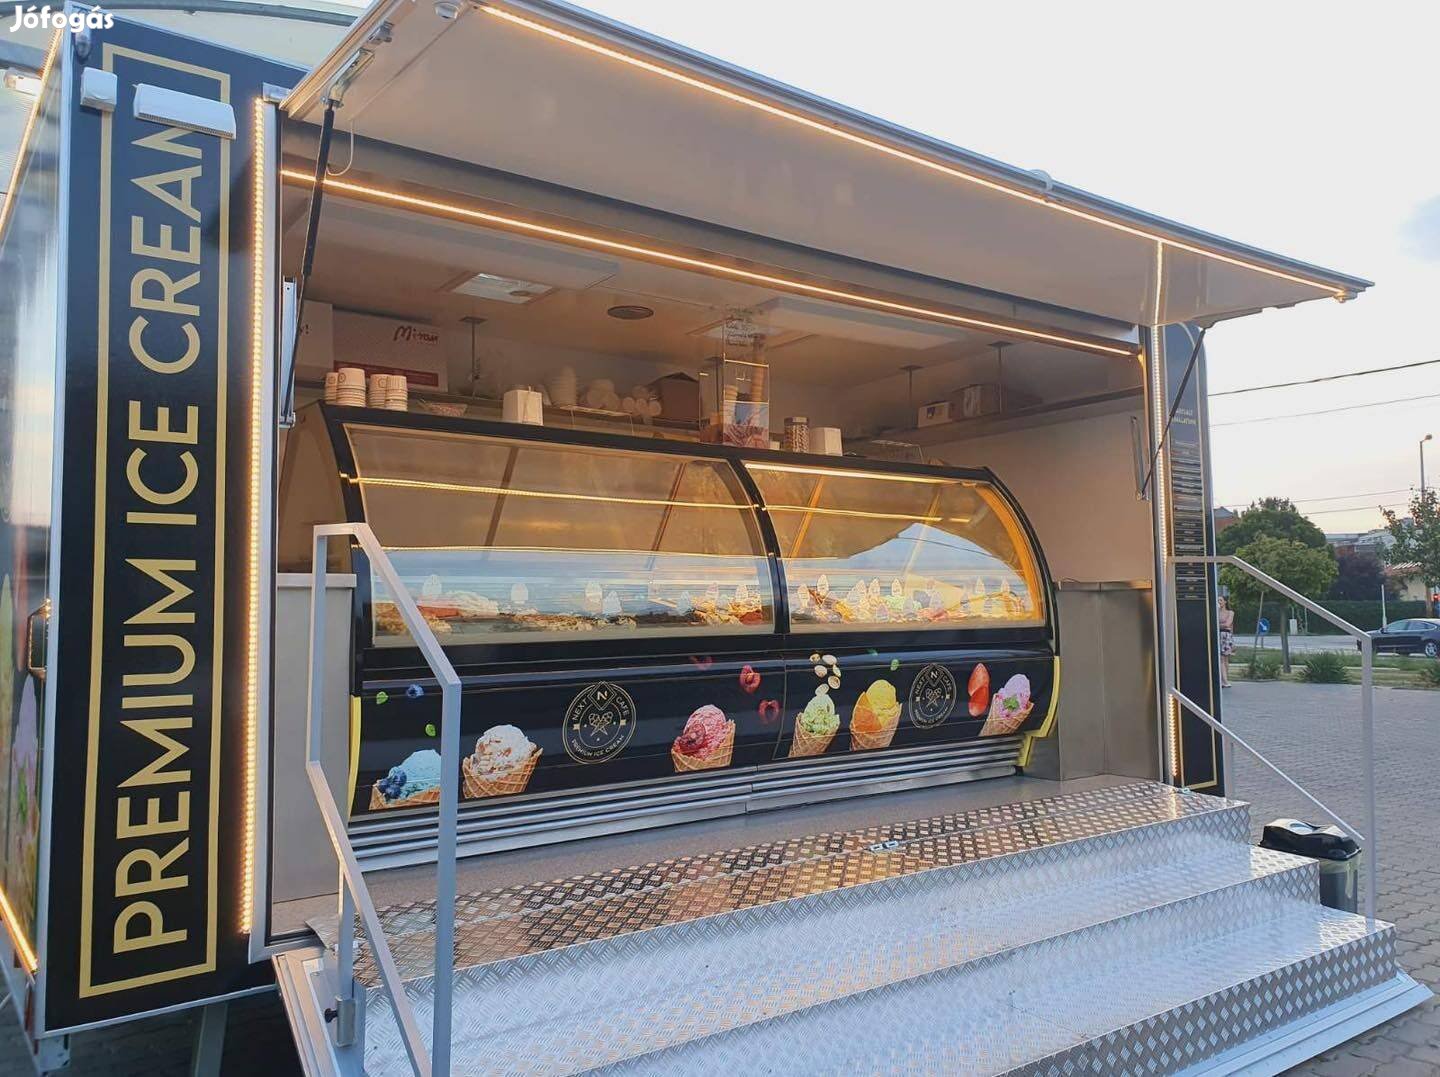 Egyedi megjelenésű fagylaltos kocsi - food truck pótkocsi